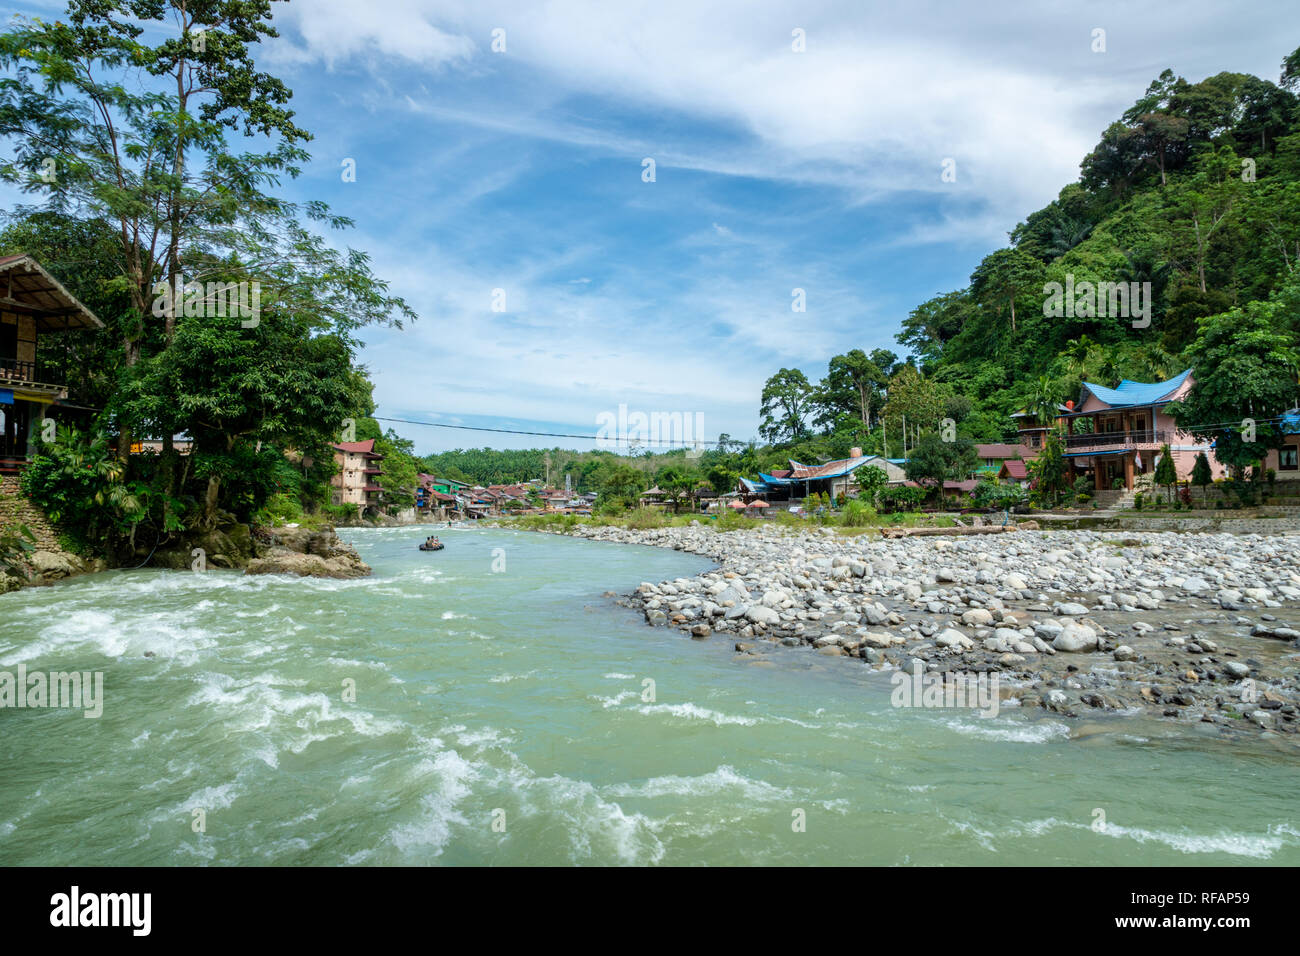 Bukit Lawang Dorf und Blick auf den Fluss. Bukit Lawang ist ein beliebtes Reiseziel für Ihre Dschungel Trekking Tour und Orang-utans. Stockfoto